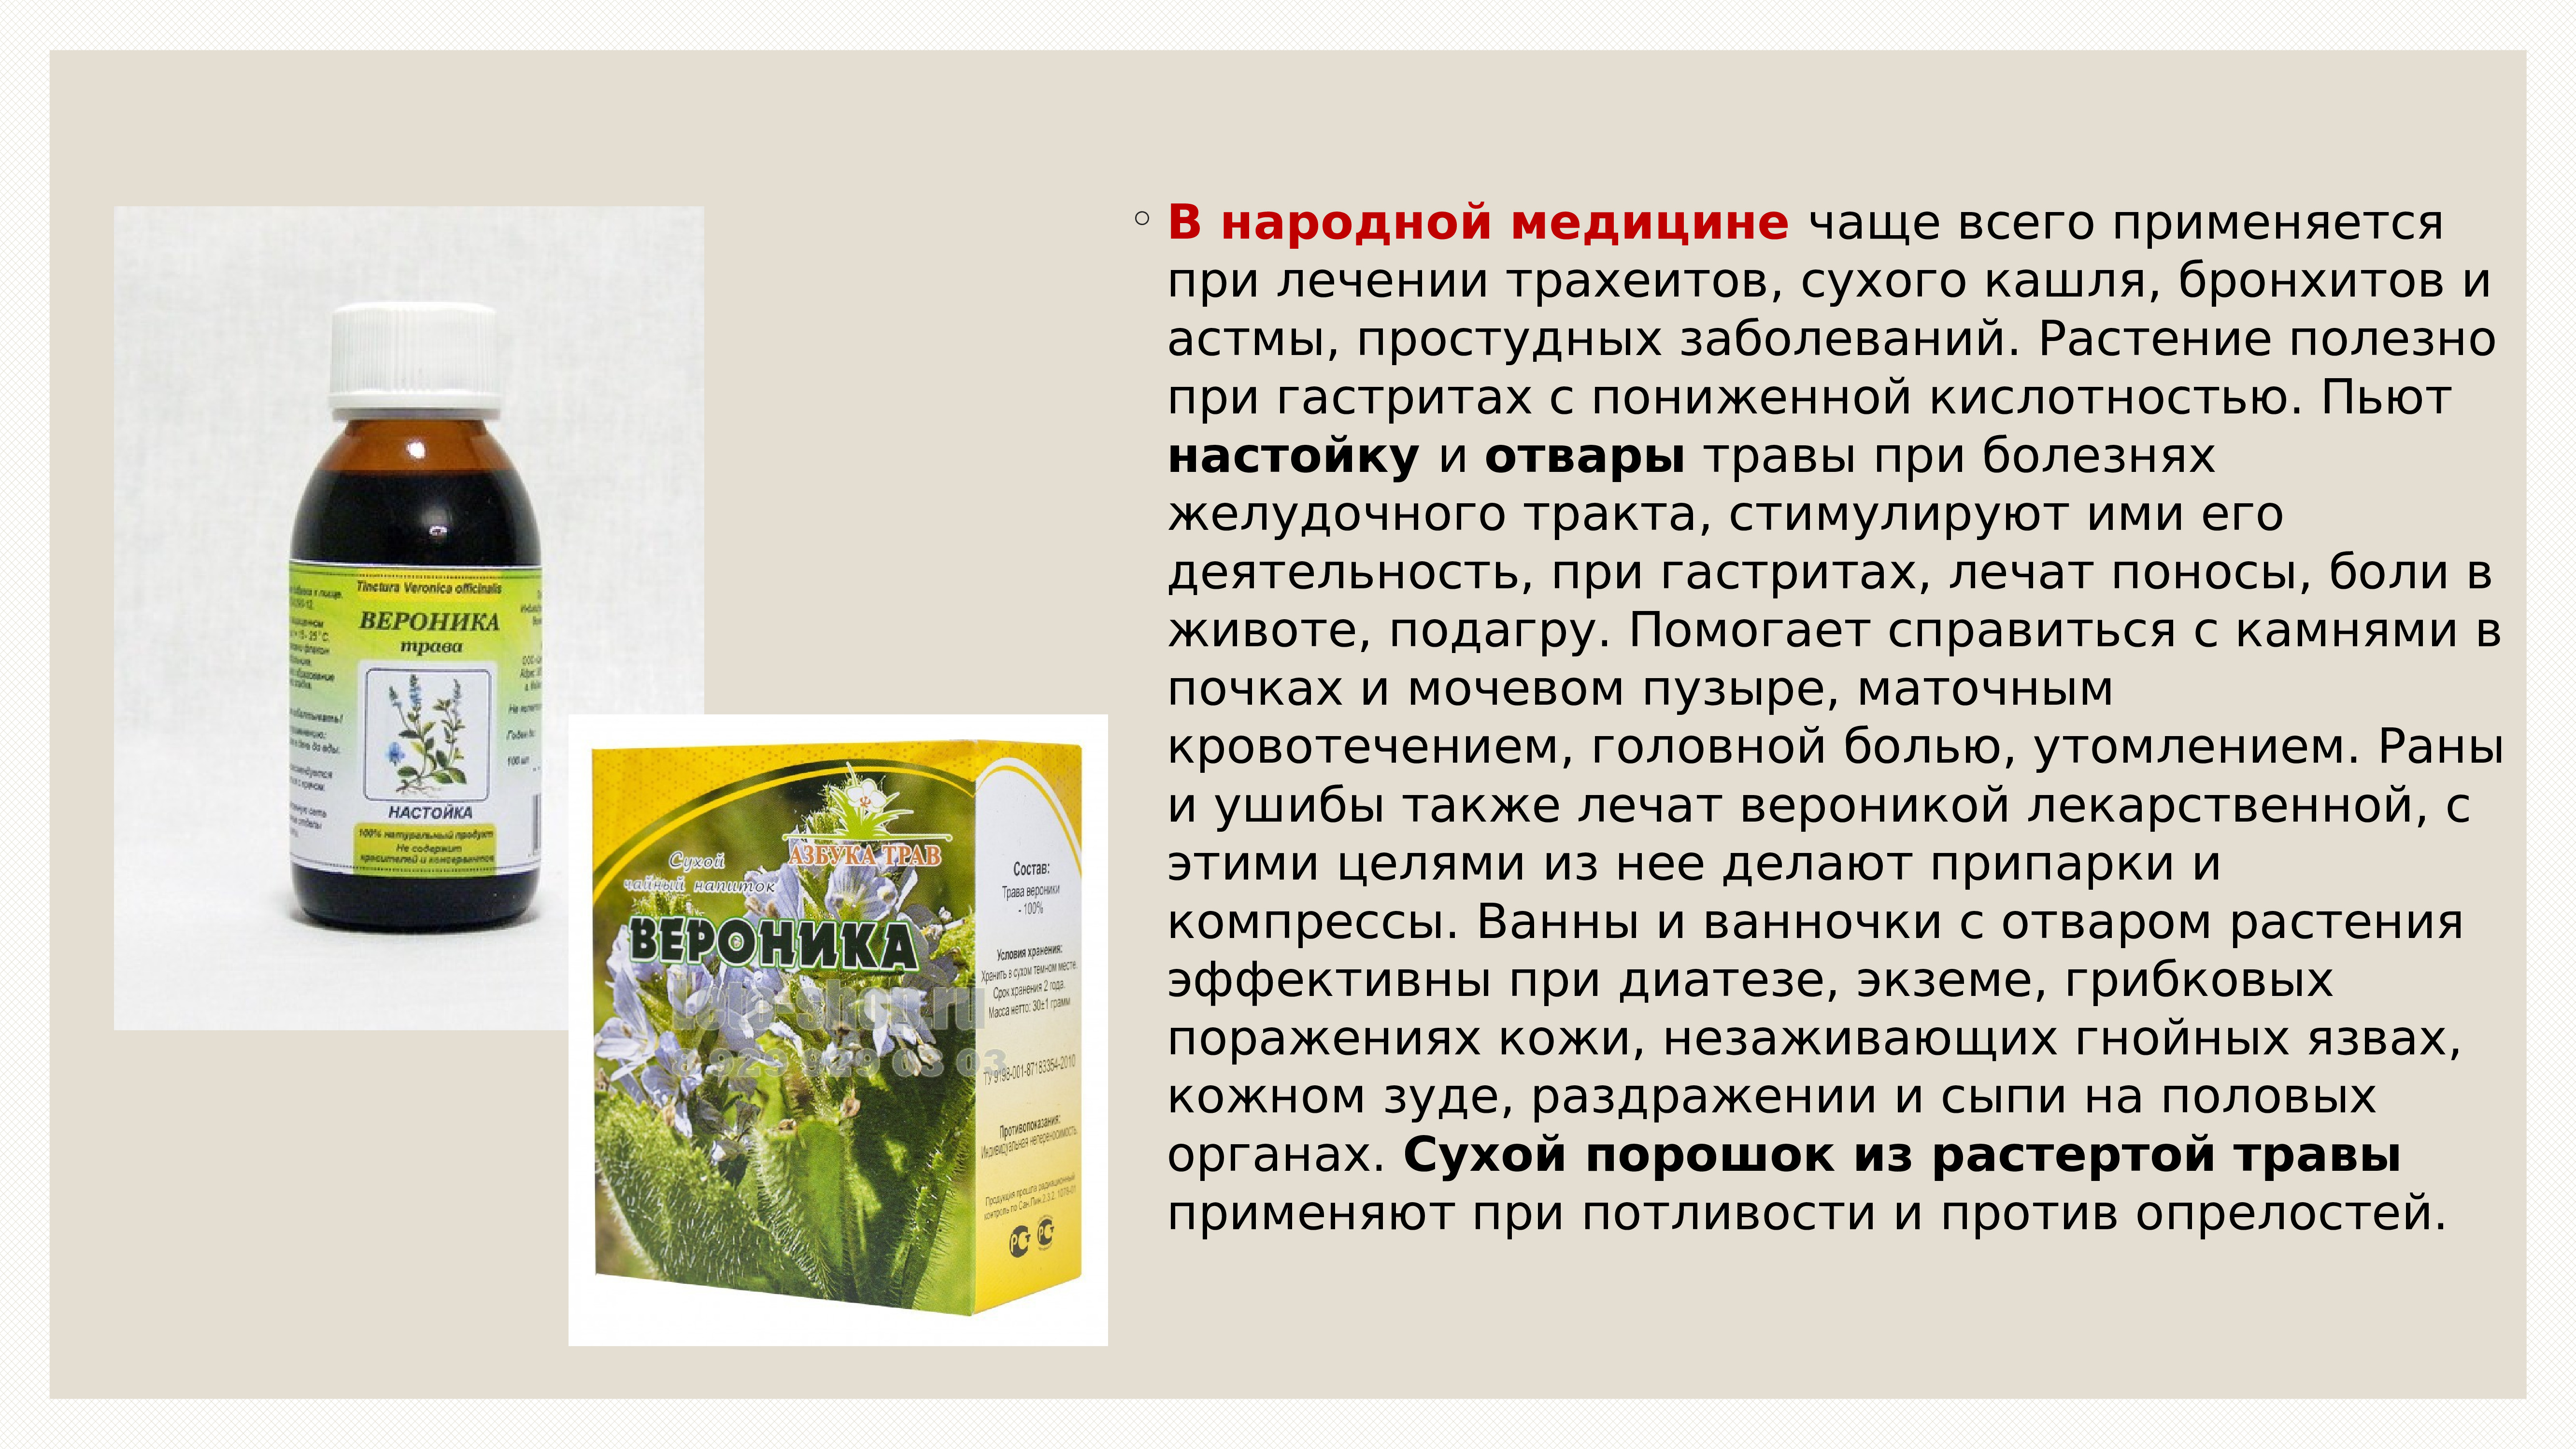 Ромашка повышает кислотность. Лекарственные растения применяемые при трахеите. Травяные настои при гастрите. Растение помогающие при кашле. Растительные препараты при гастрите.